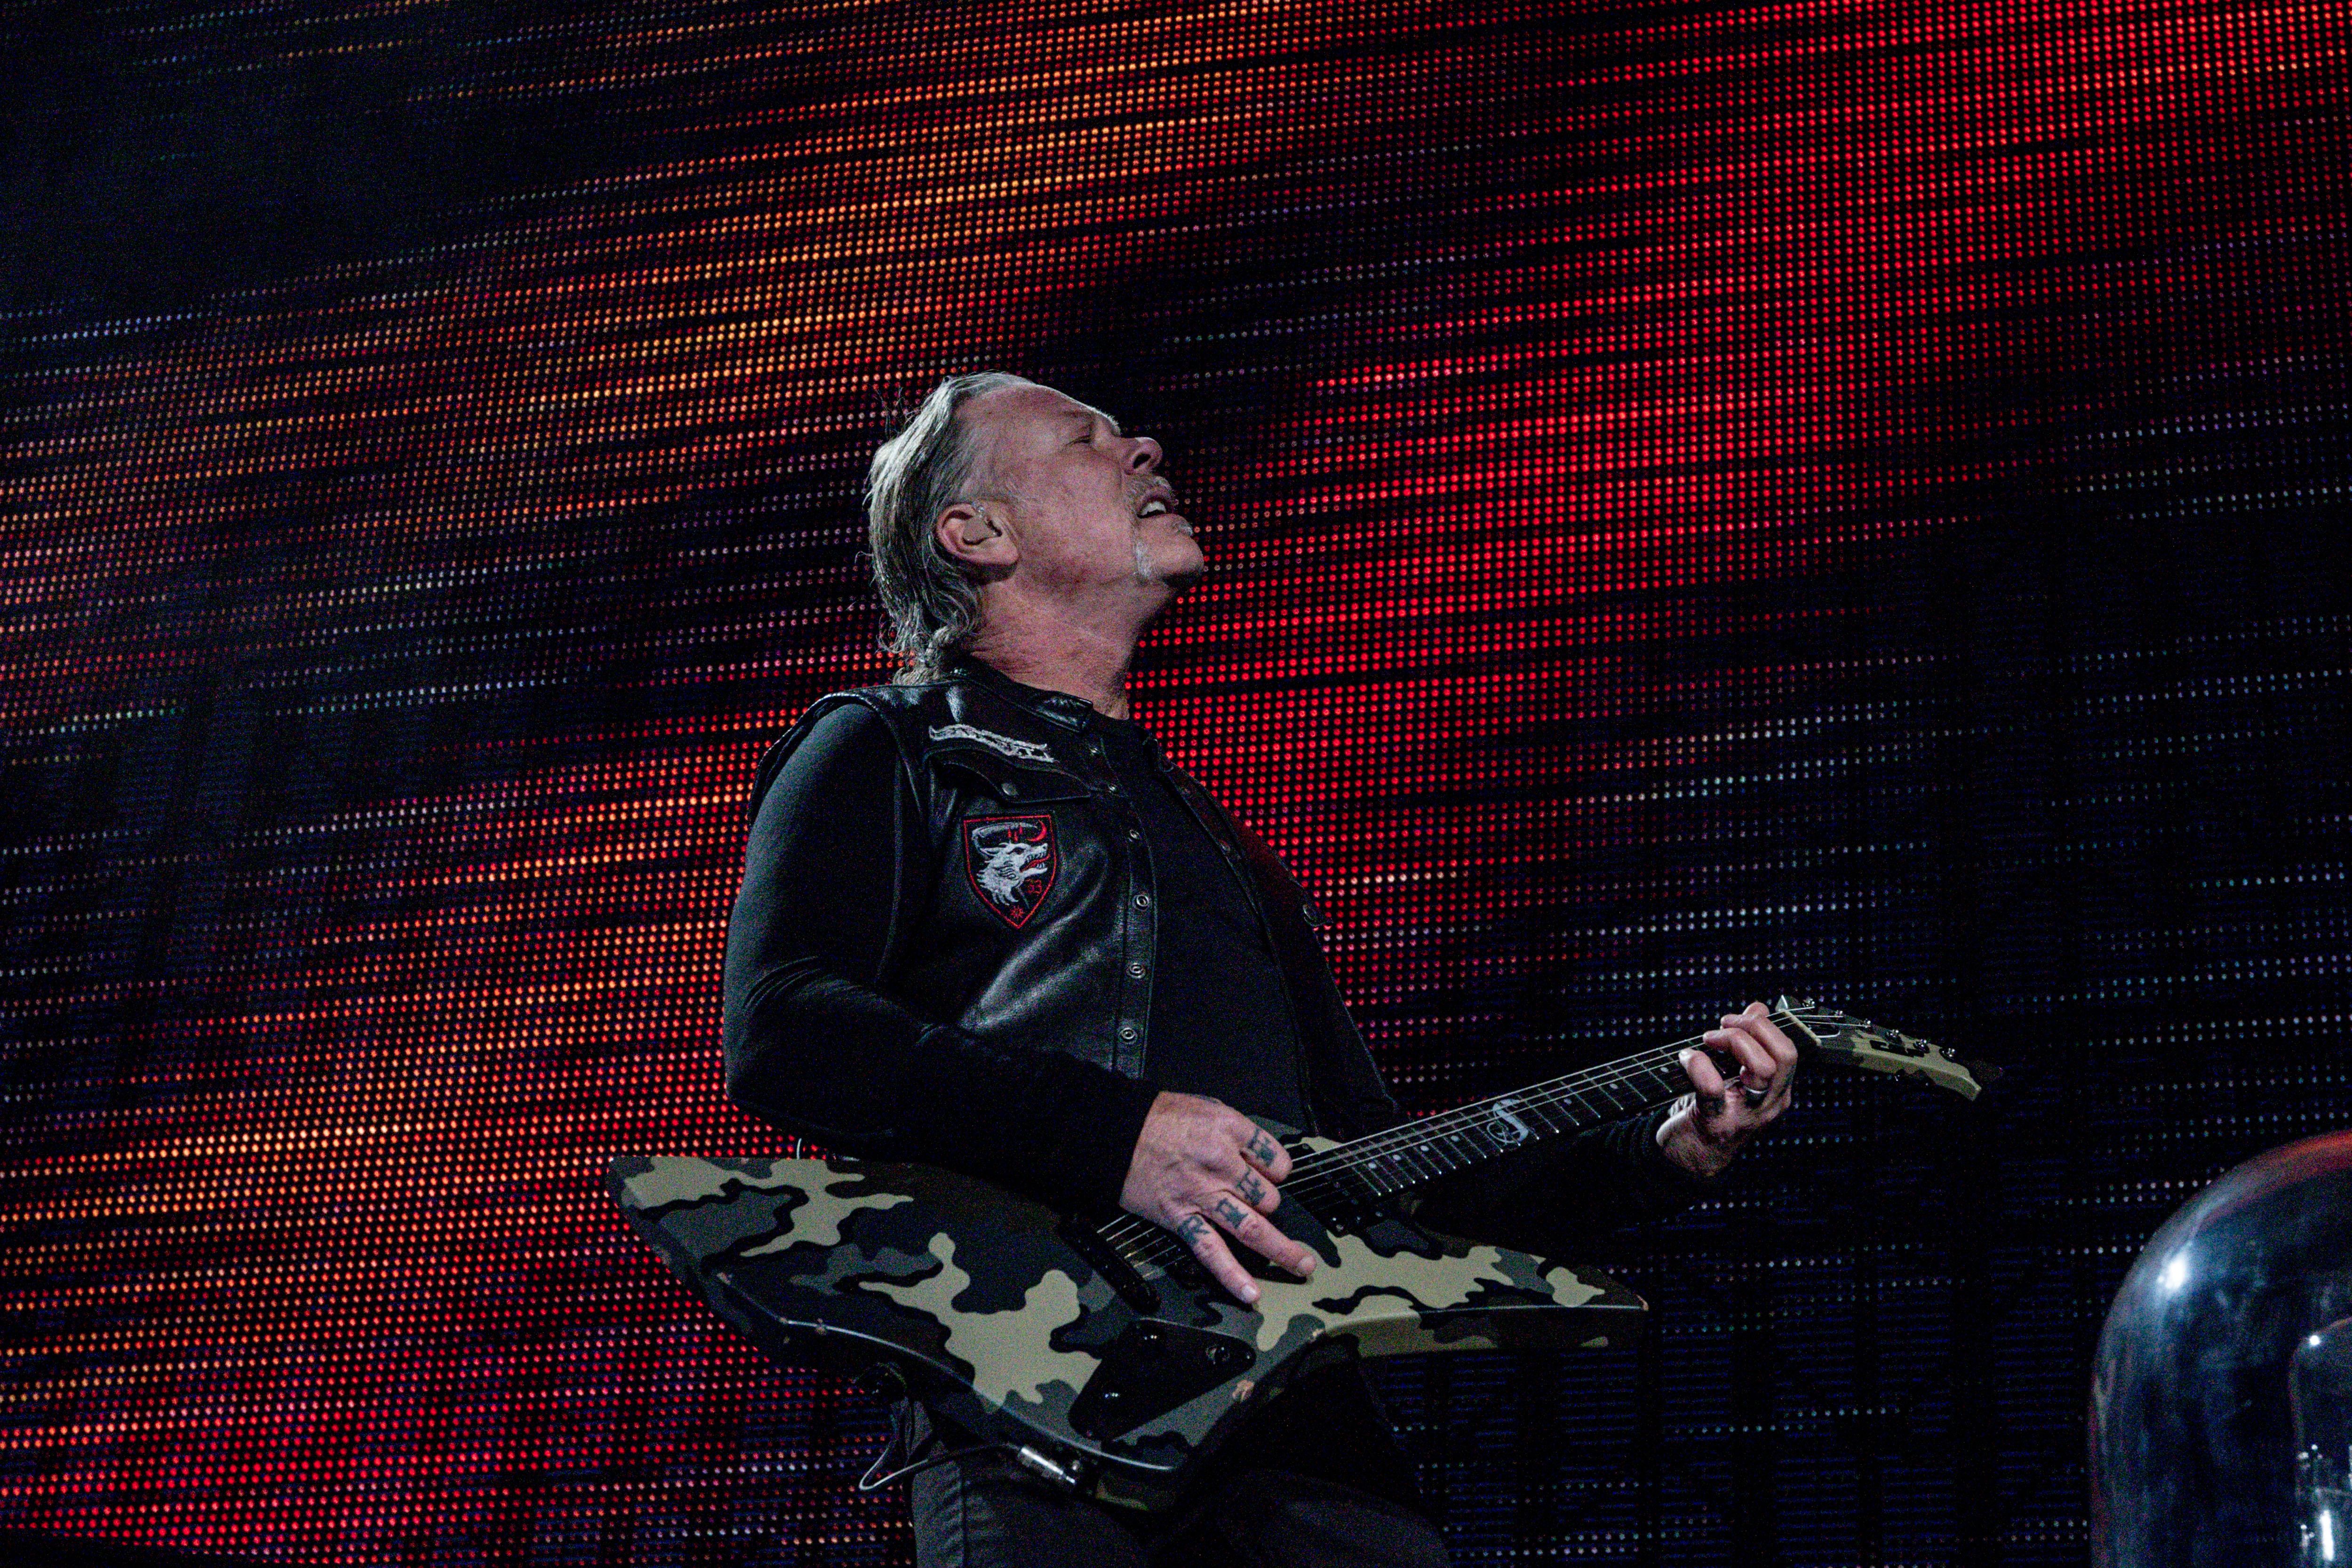 El cantante de Metallica se derrumba en pleno concierto: "Estoy viejo, no puedo tocar nunca más"